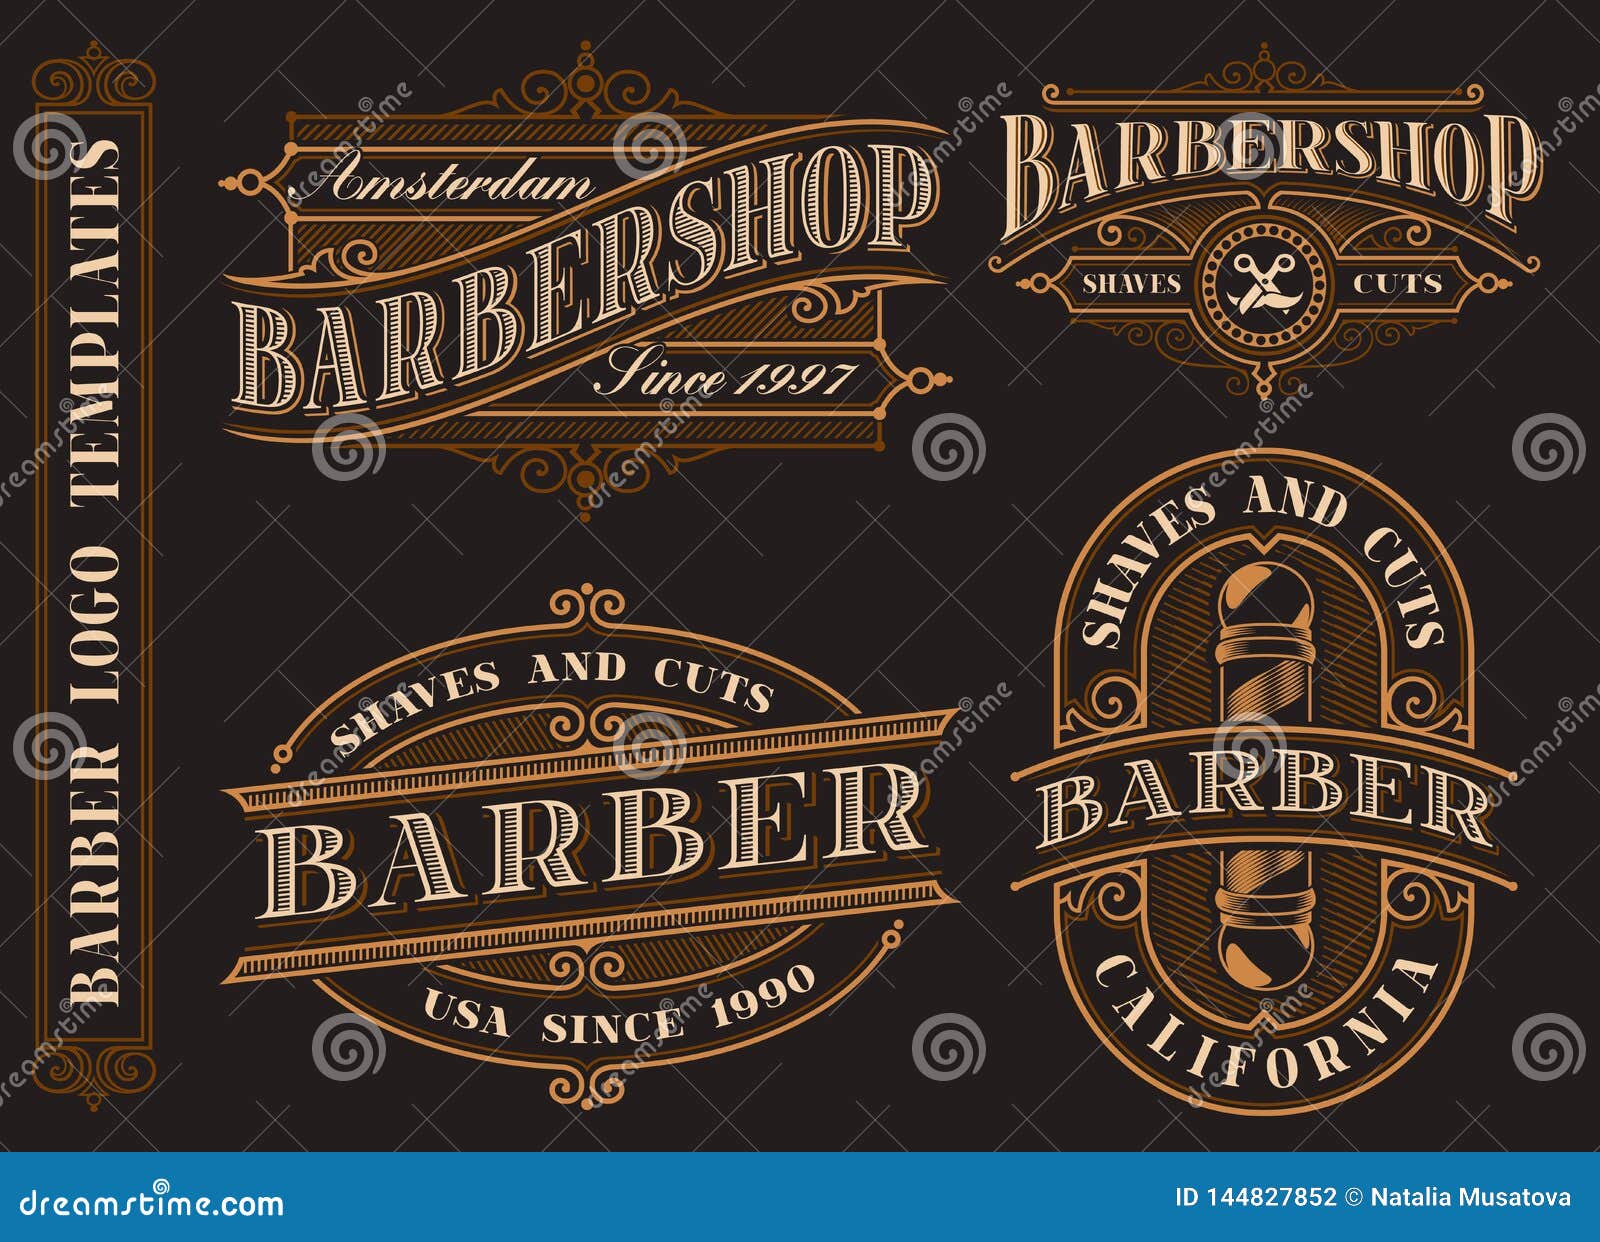 set of vintage barbershop emblems, logos, badges.